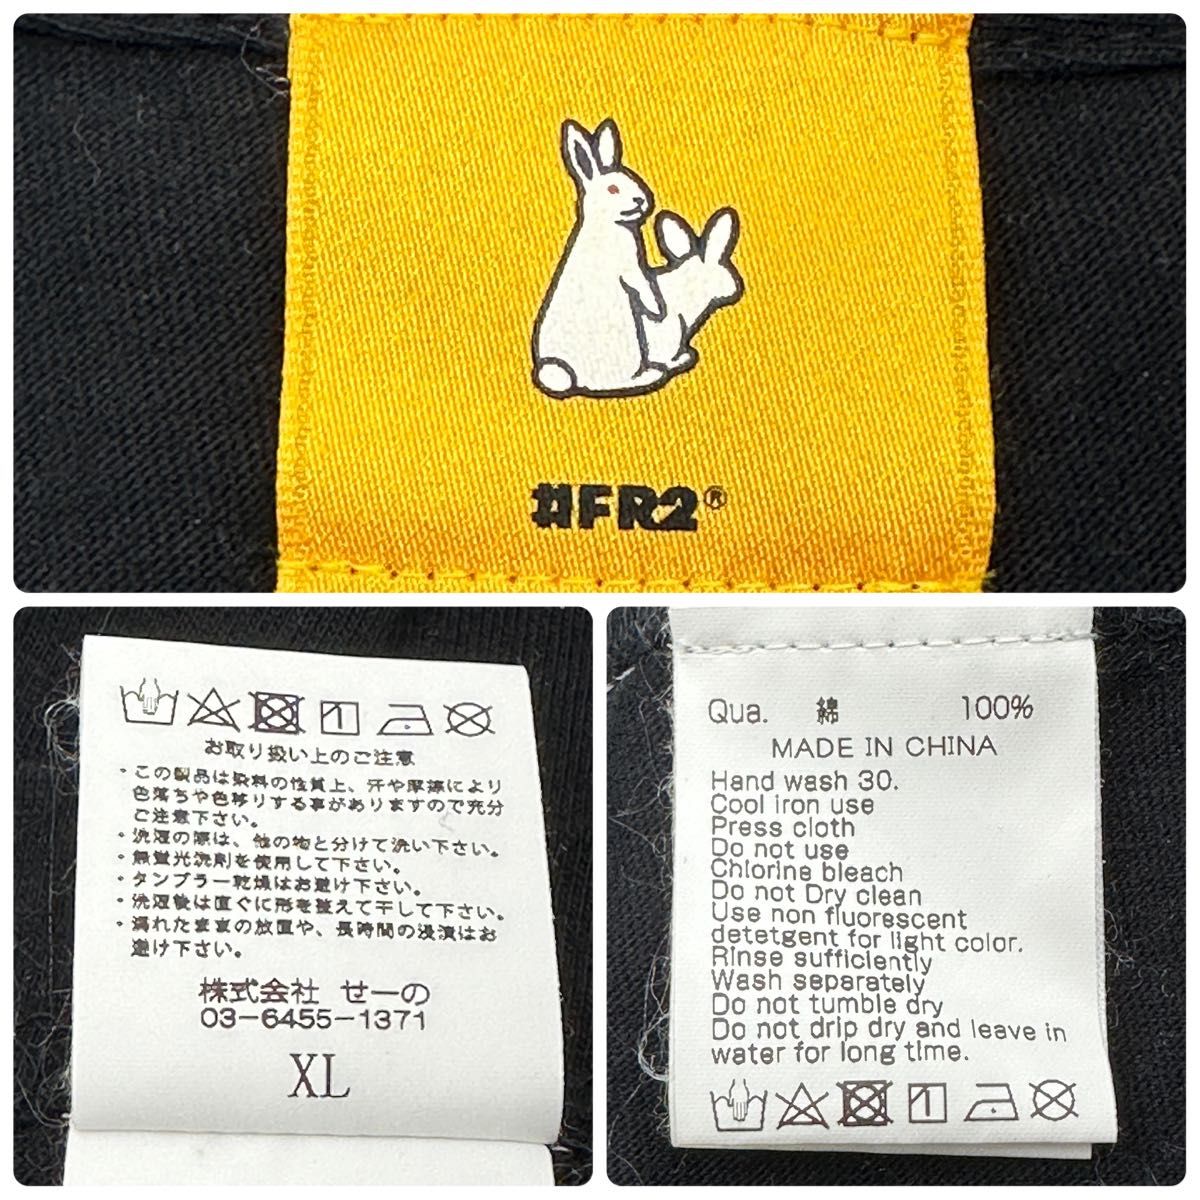 【希少XL】＃FR2　ファッキングラビッツ　両面ビックロゴ　Tシャツ　完売品☆